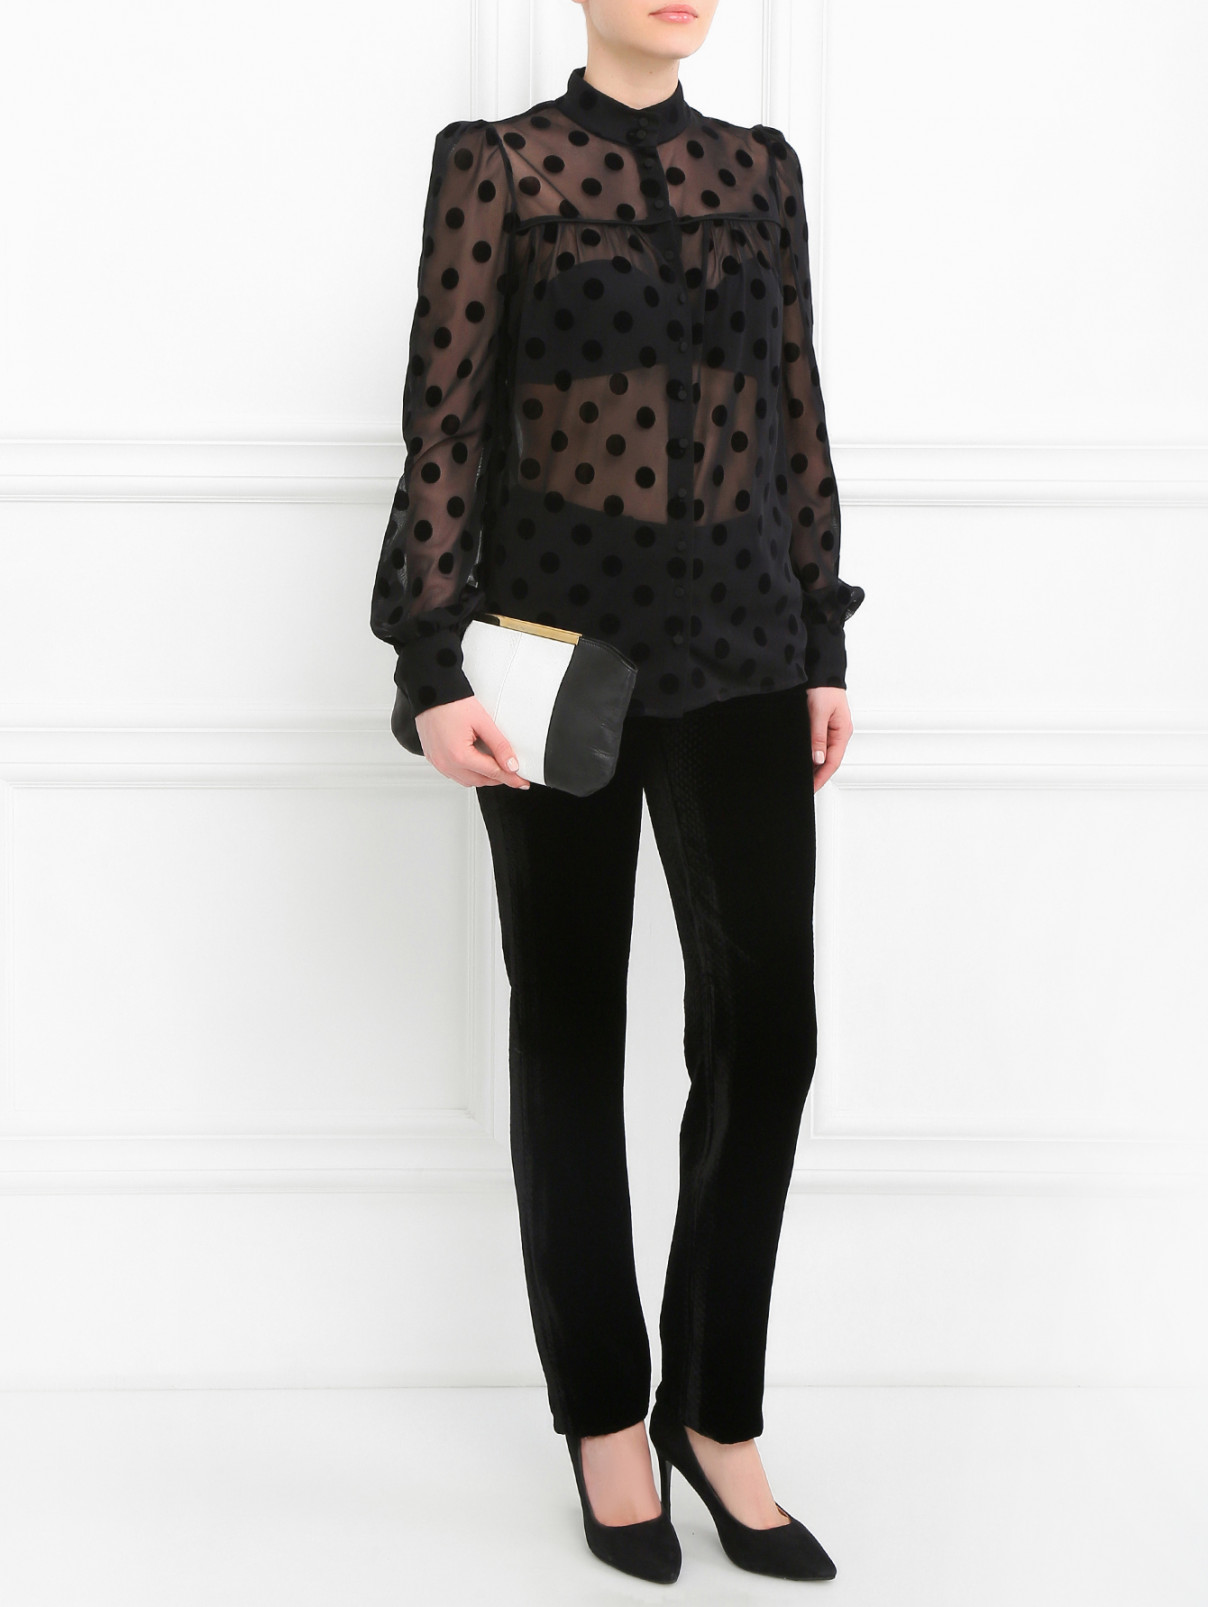 Бархатные брюки с узором Jean Paul Gaultier  –  Модель Общий вид  – Цвет:  Черный